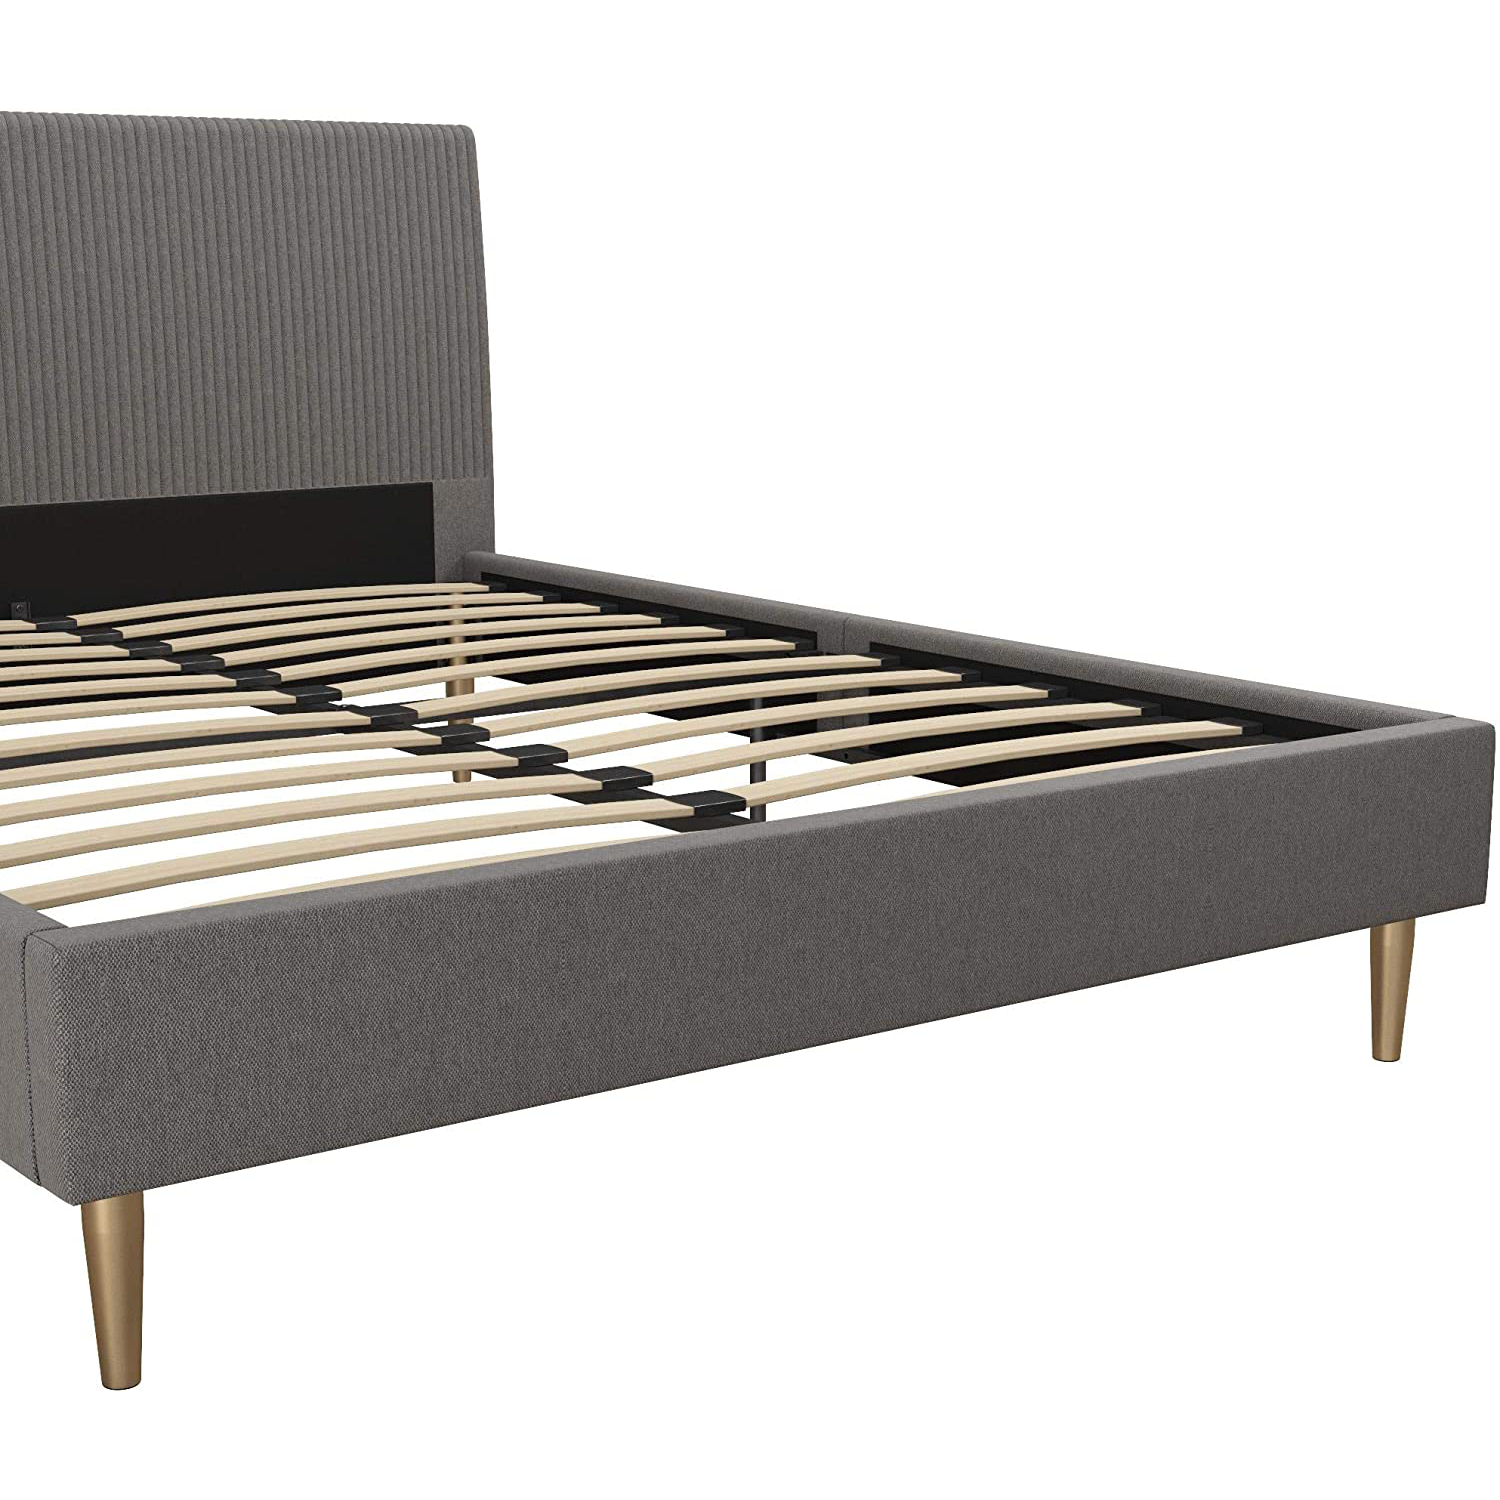 Upholstered Modern Platform Bed Frame